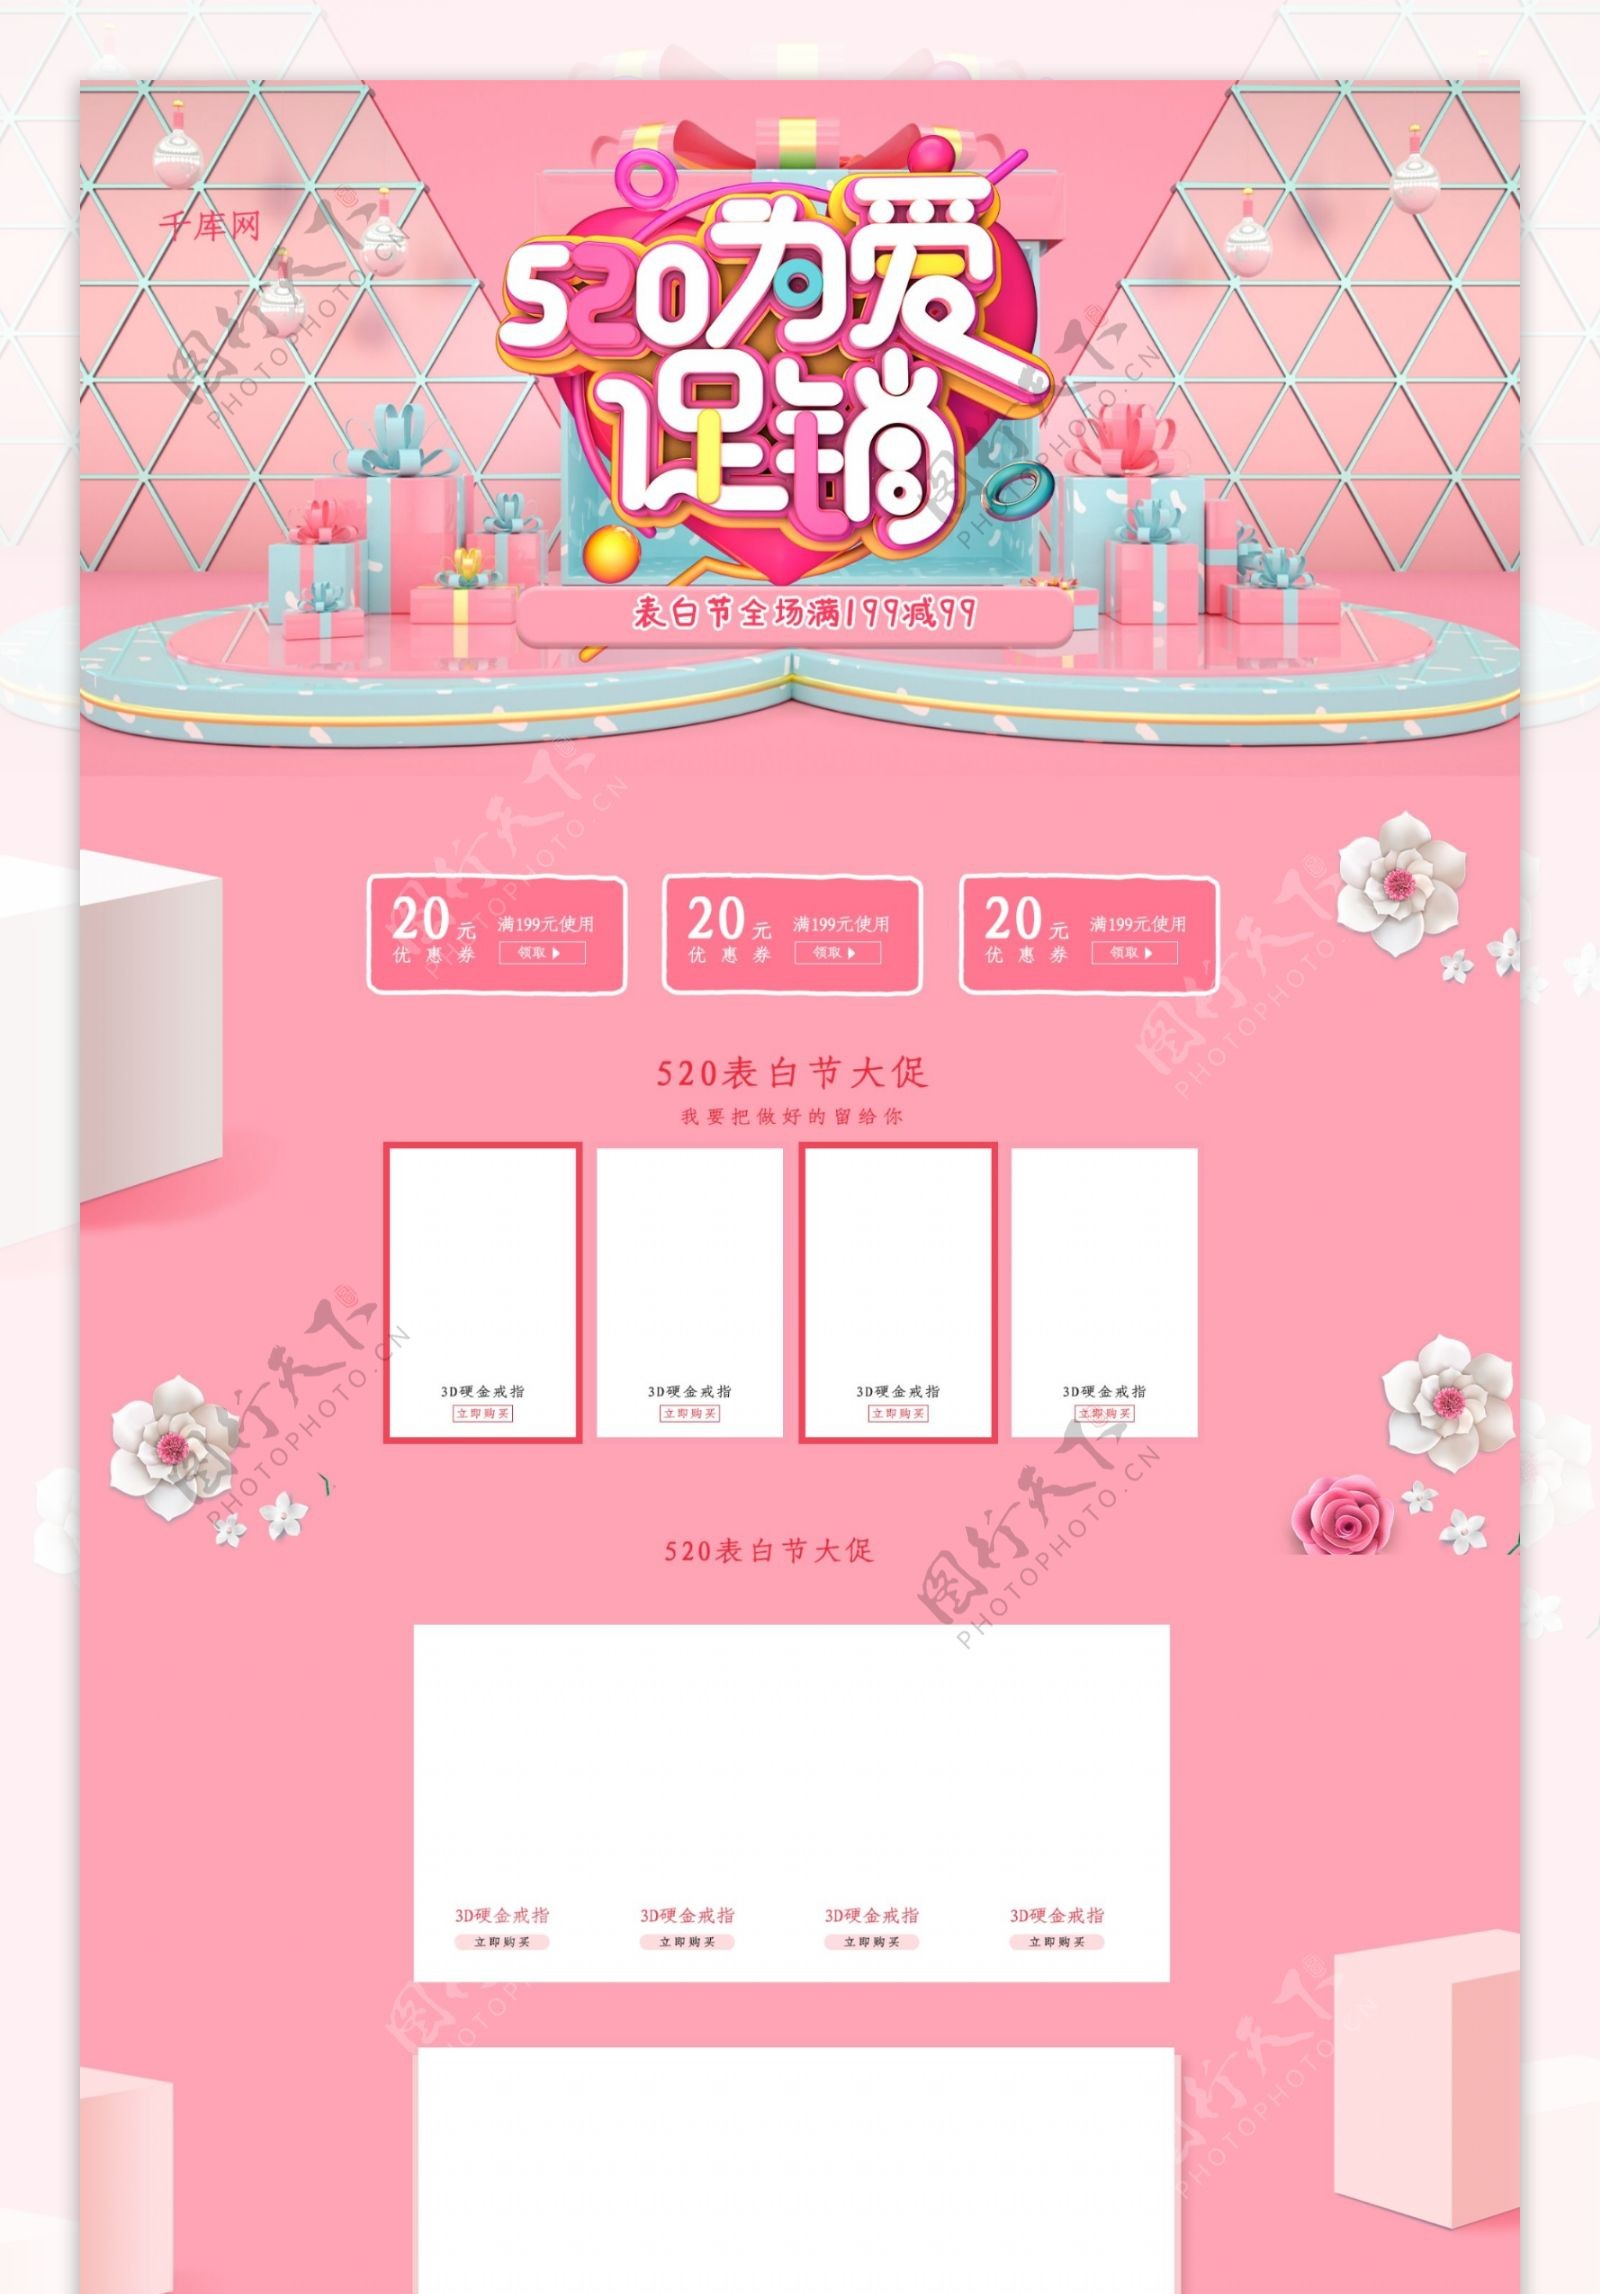 520为爱促销C4D粉色清新电商淘宝首页模板